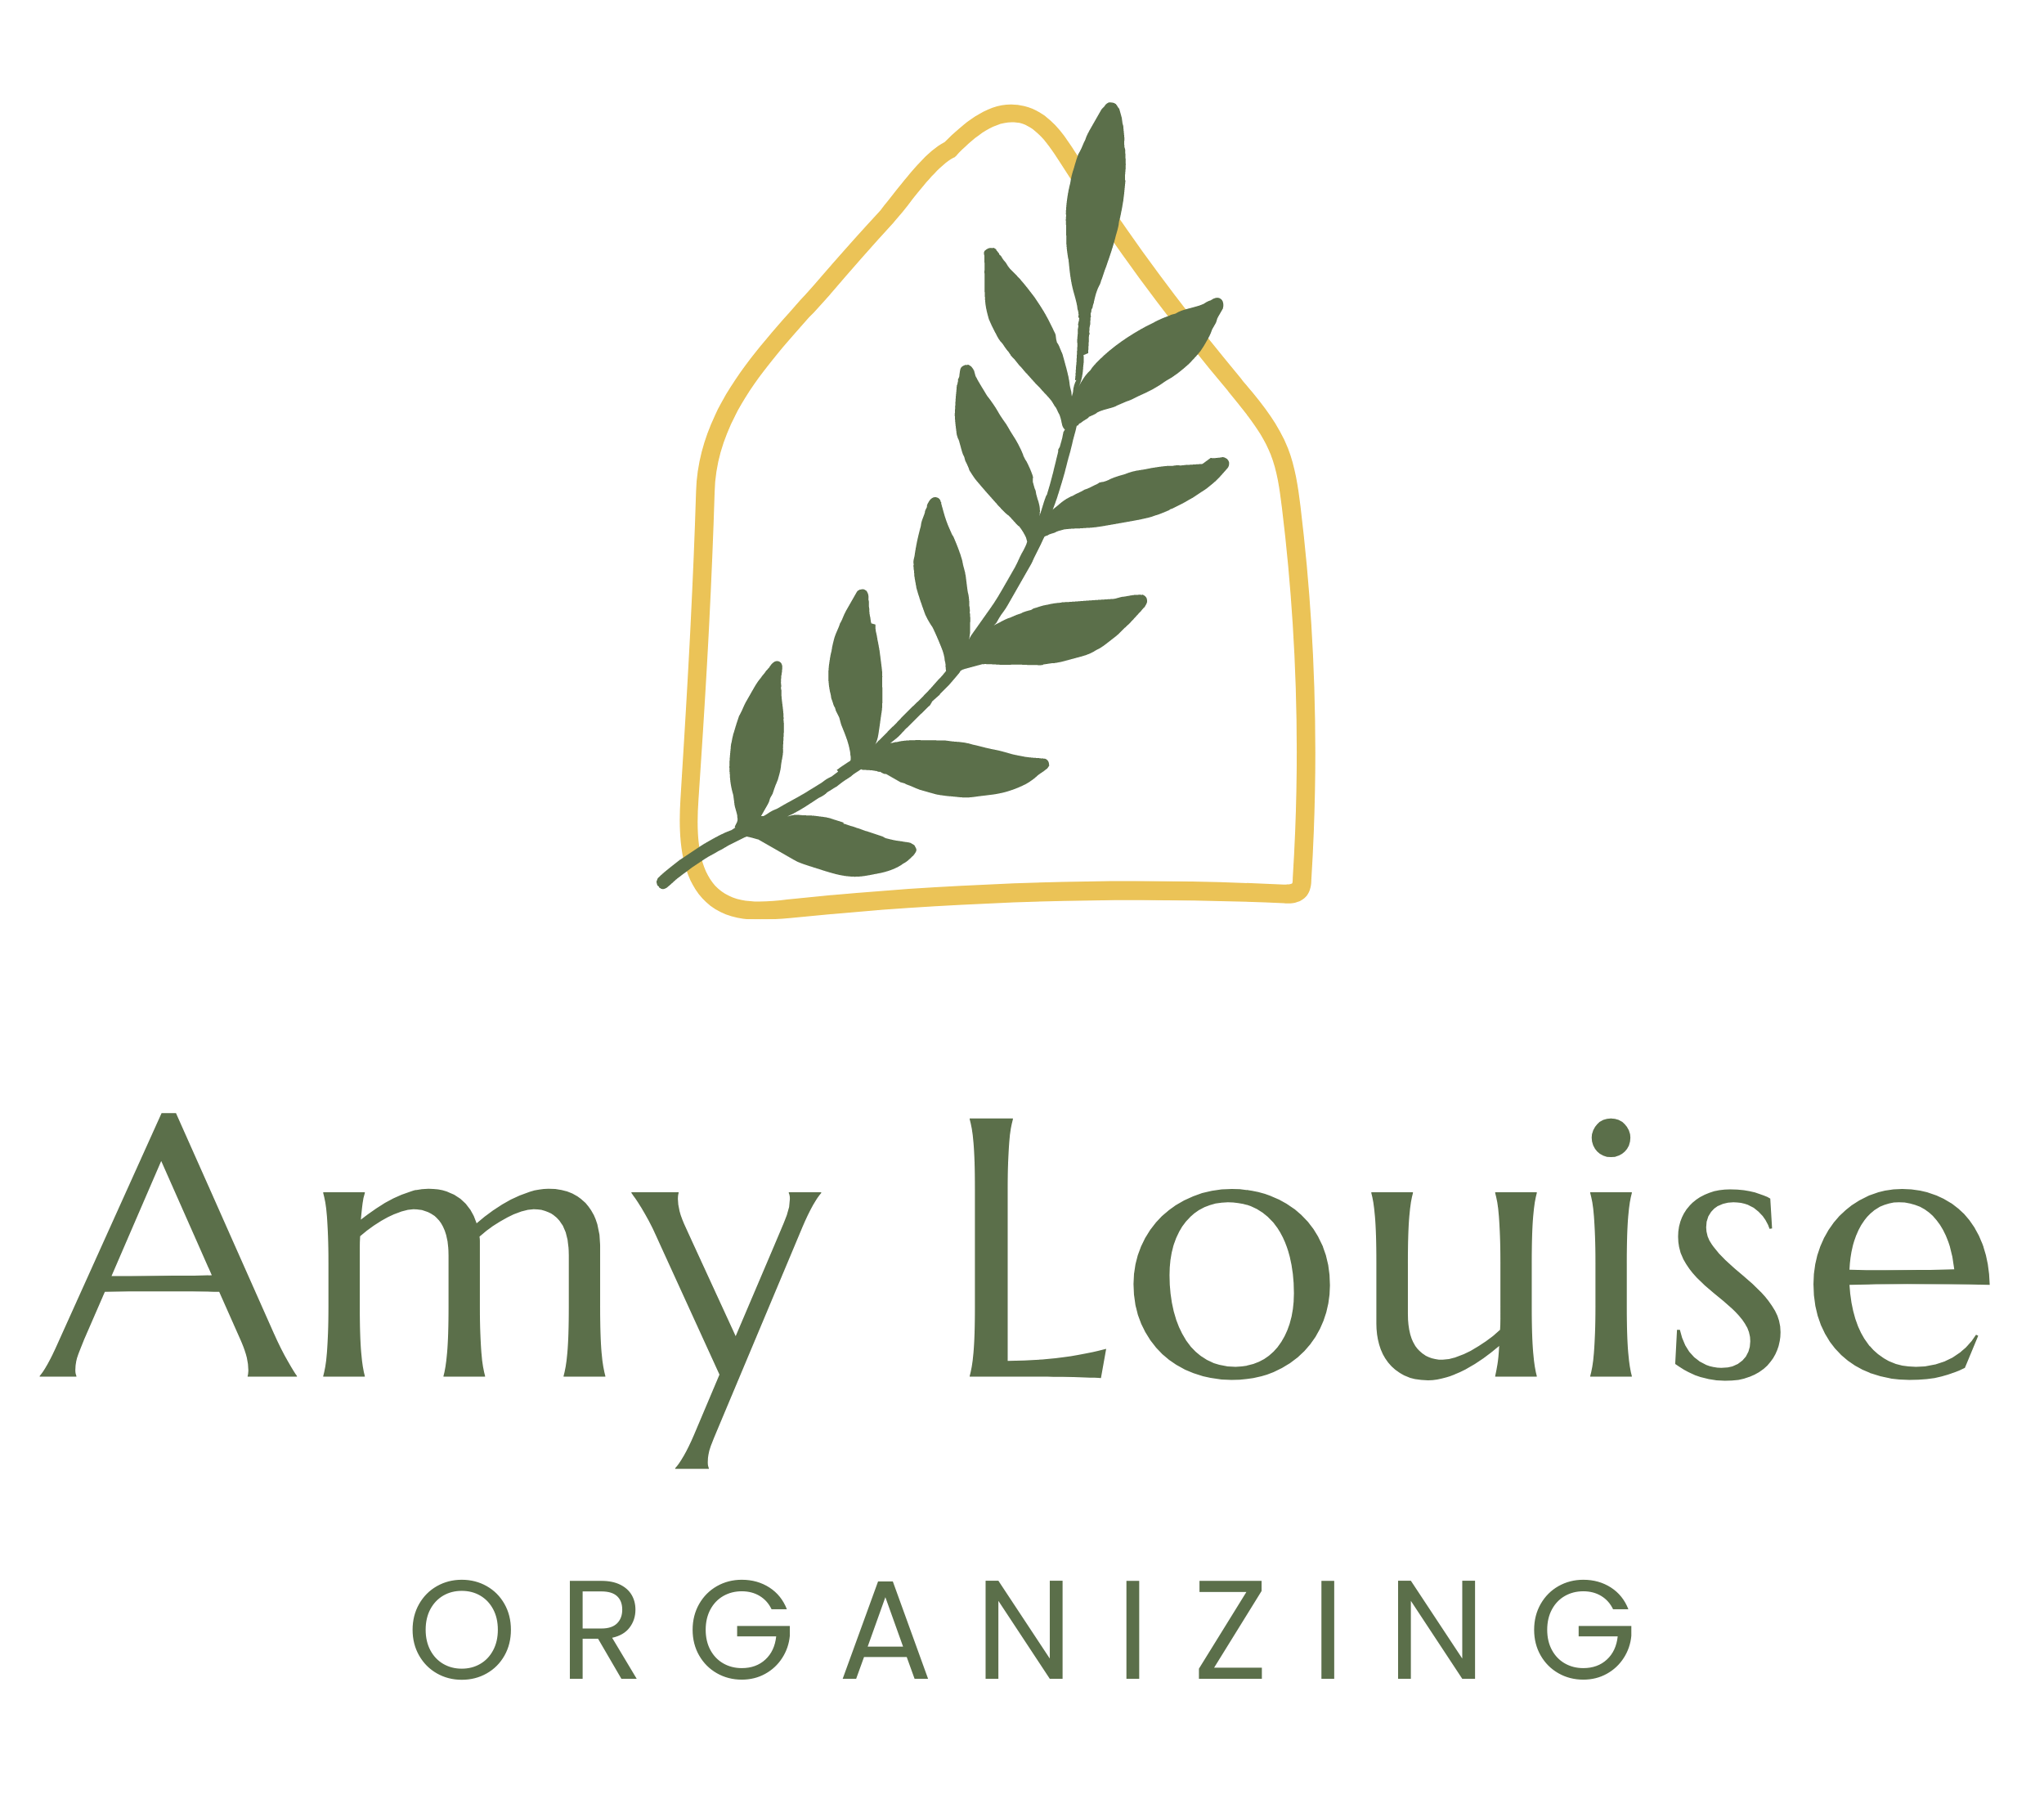 Amy Louise Organizing